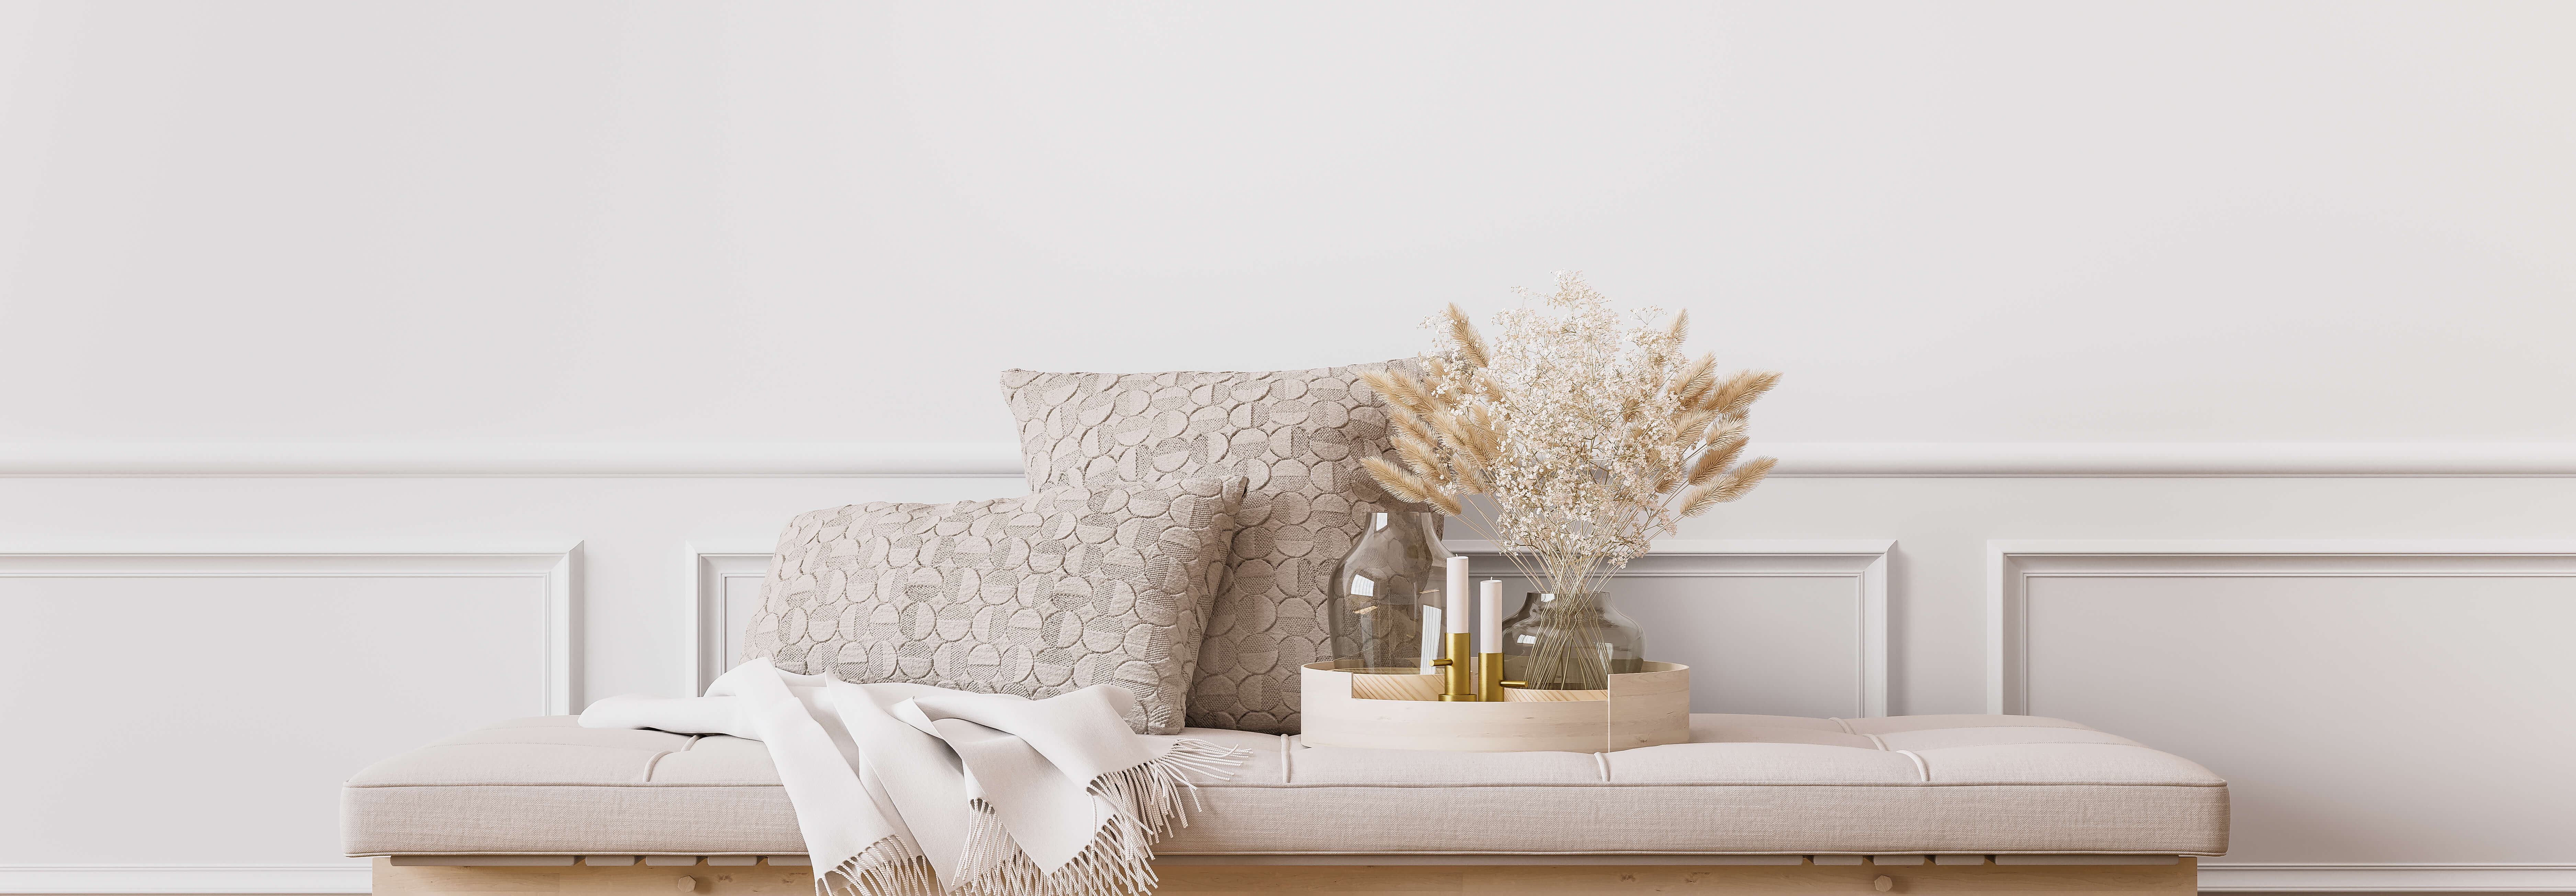 Dekorative Kissen, eine Decke und eine Glasvase mit getrockneten Gräsern drapiert auf einer weiß gekalkten Oberfläche vor einer weißen Paneelwand.